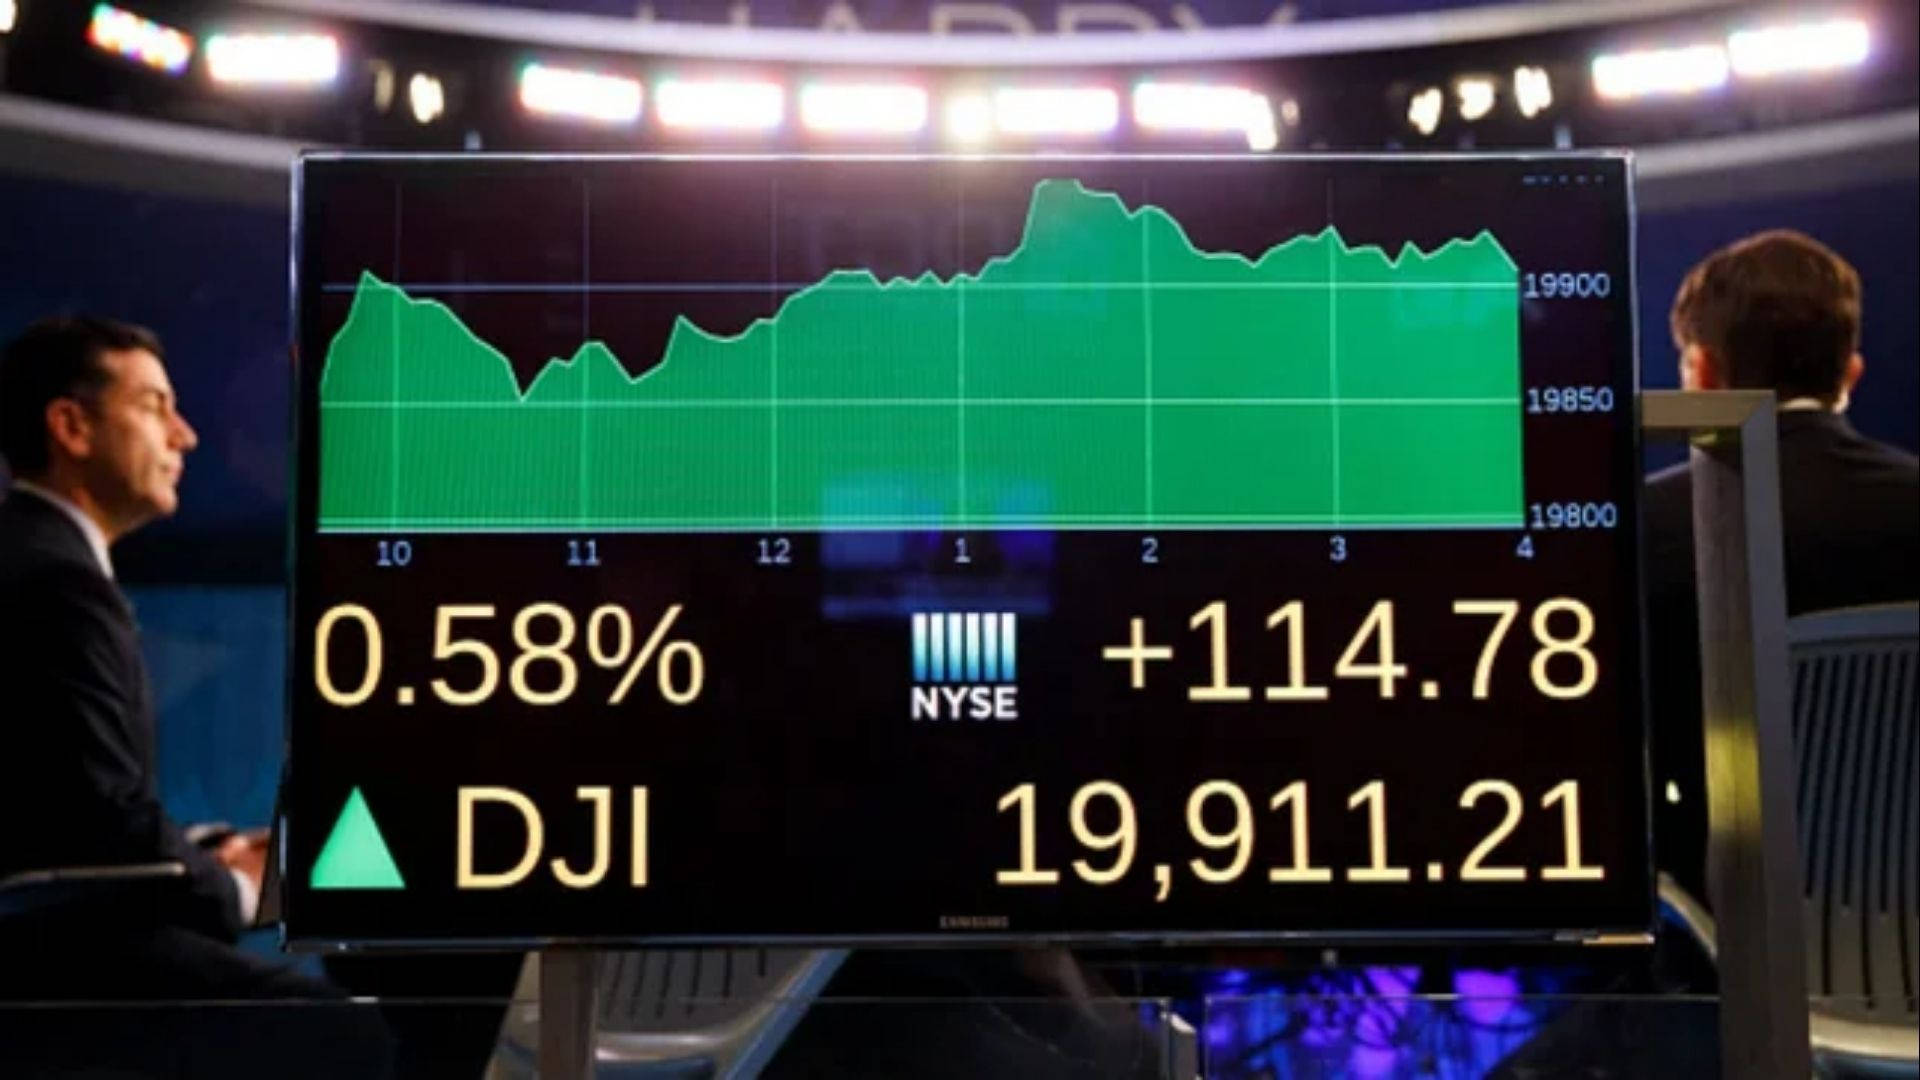 Dow Jones Index Onscreen